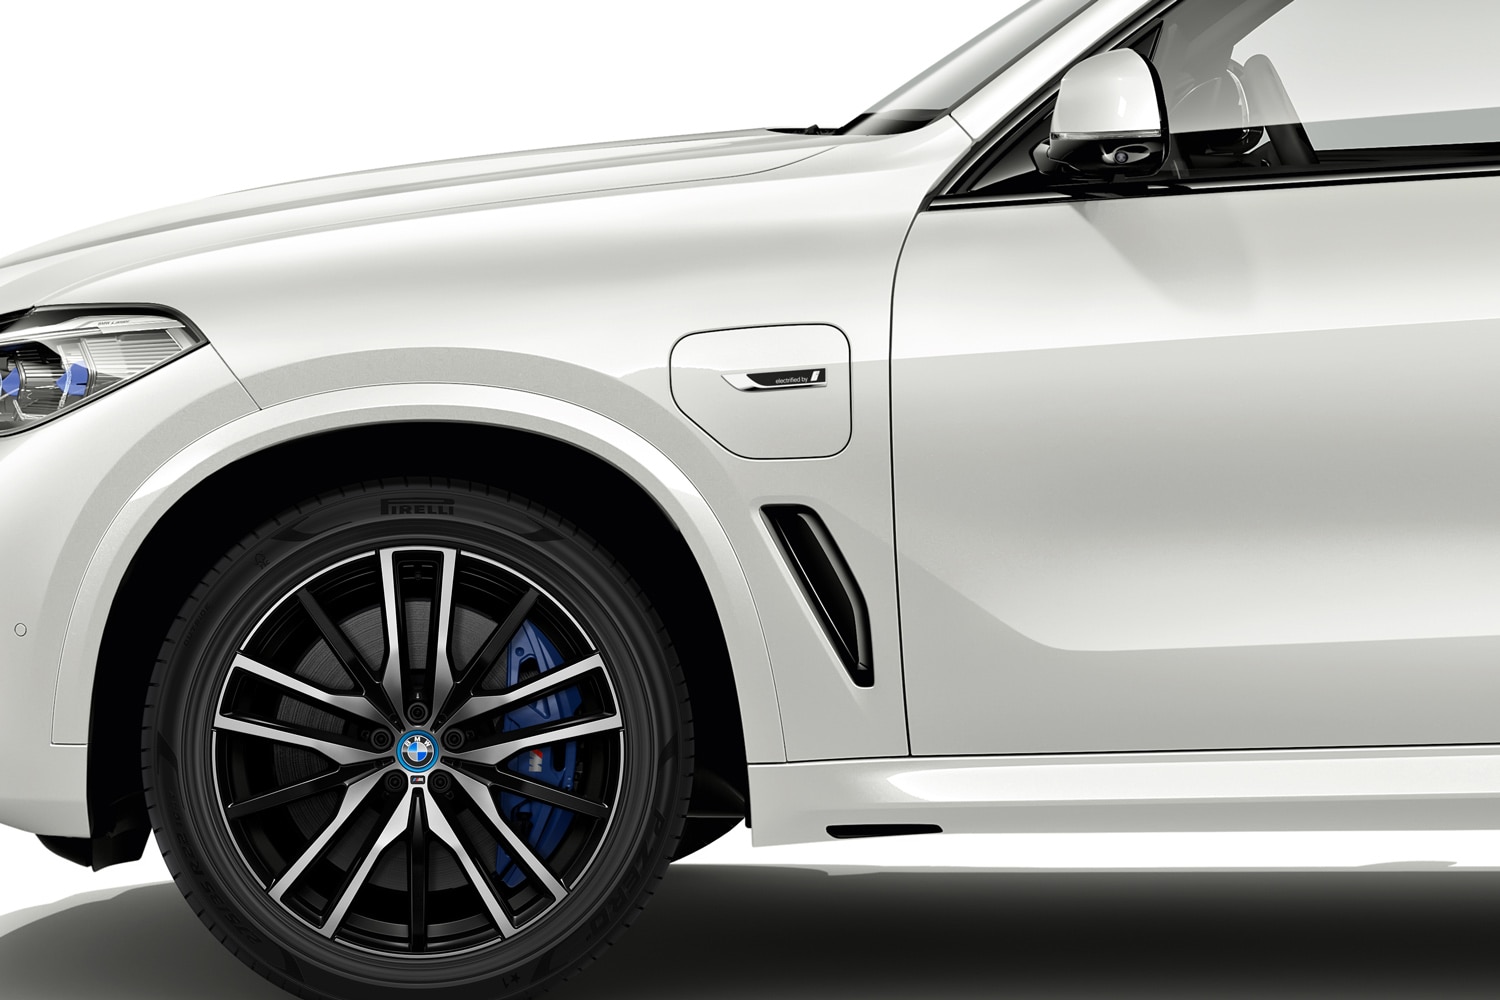 Closeup of Pirelli tire on a white BMW X5